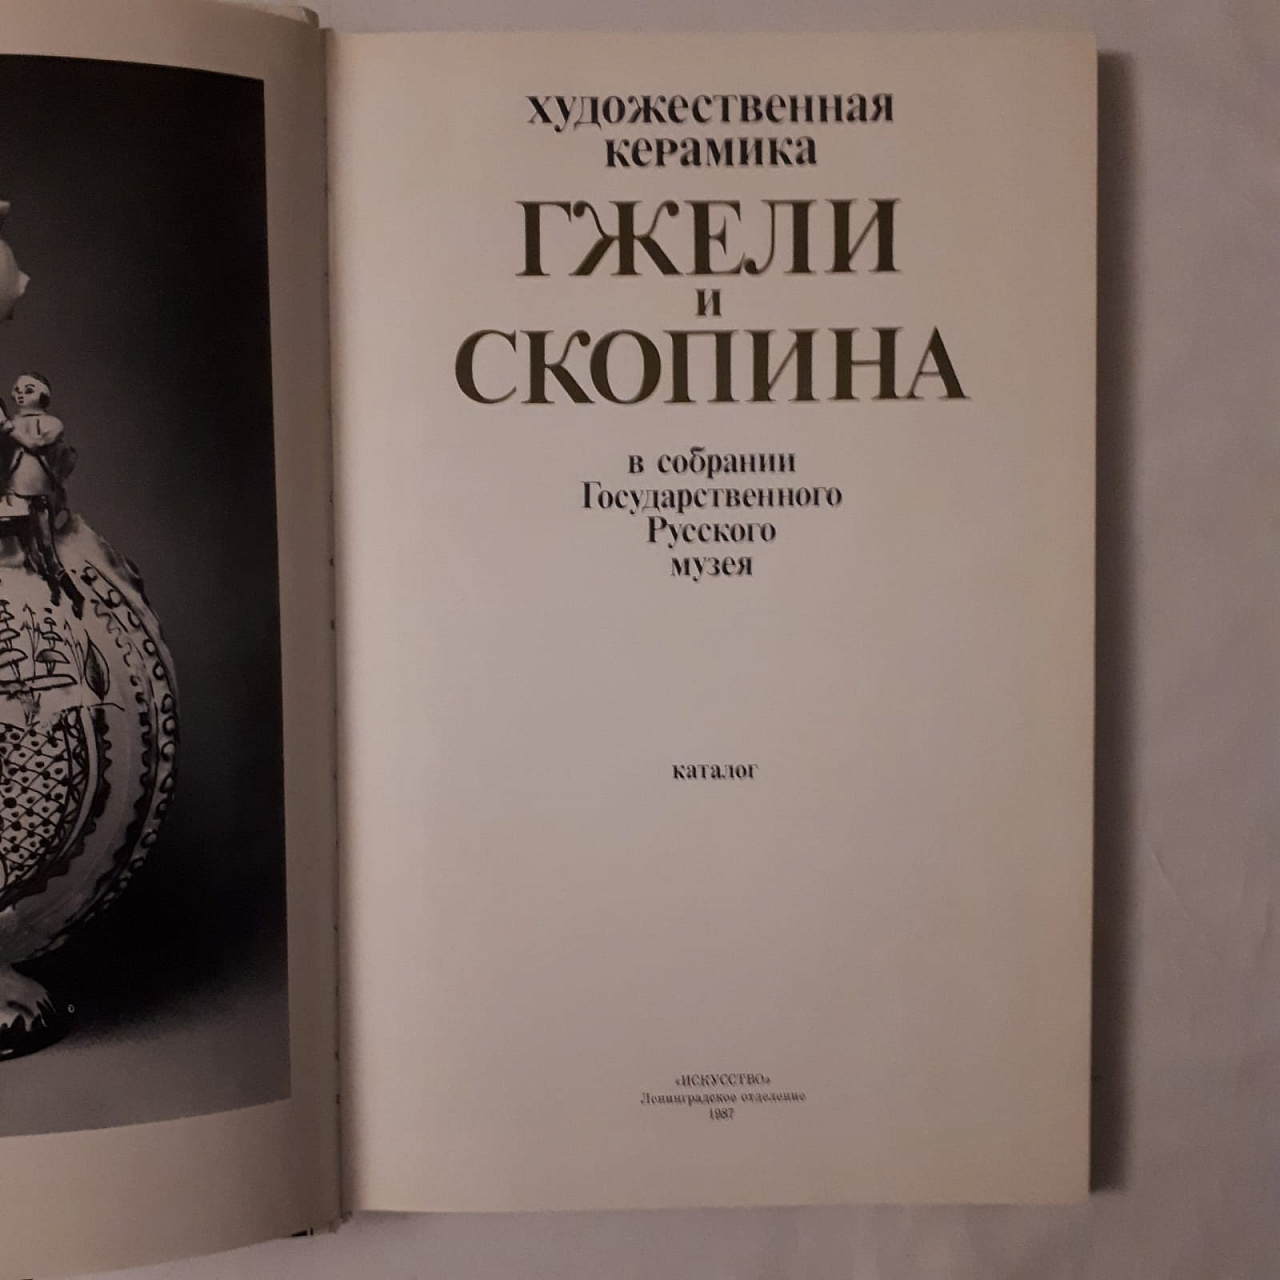 Художественная керамика Гжели и Скопина каталог 1987 года фото 2